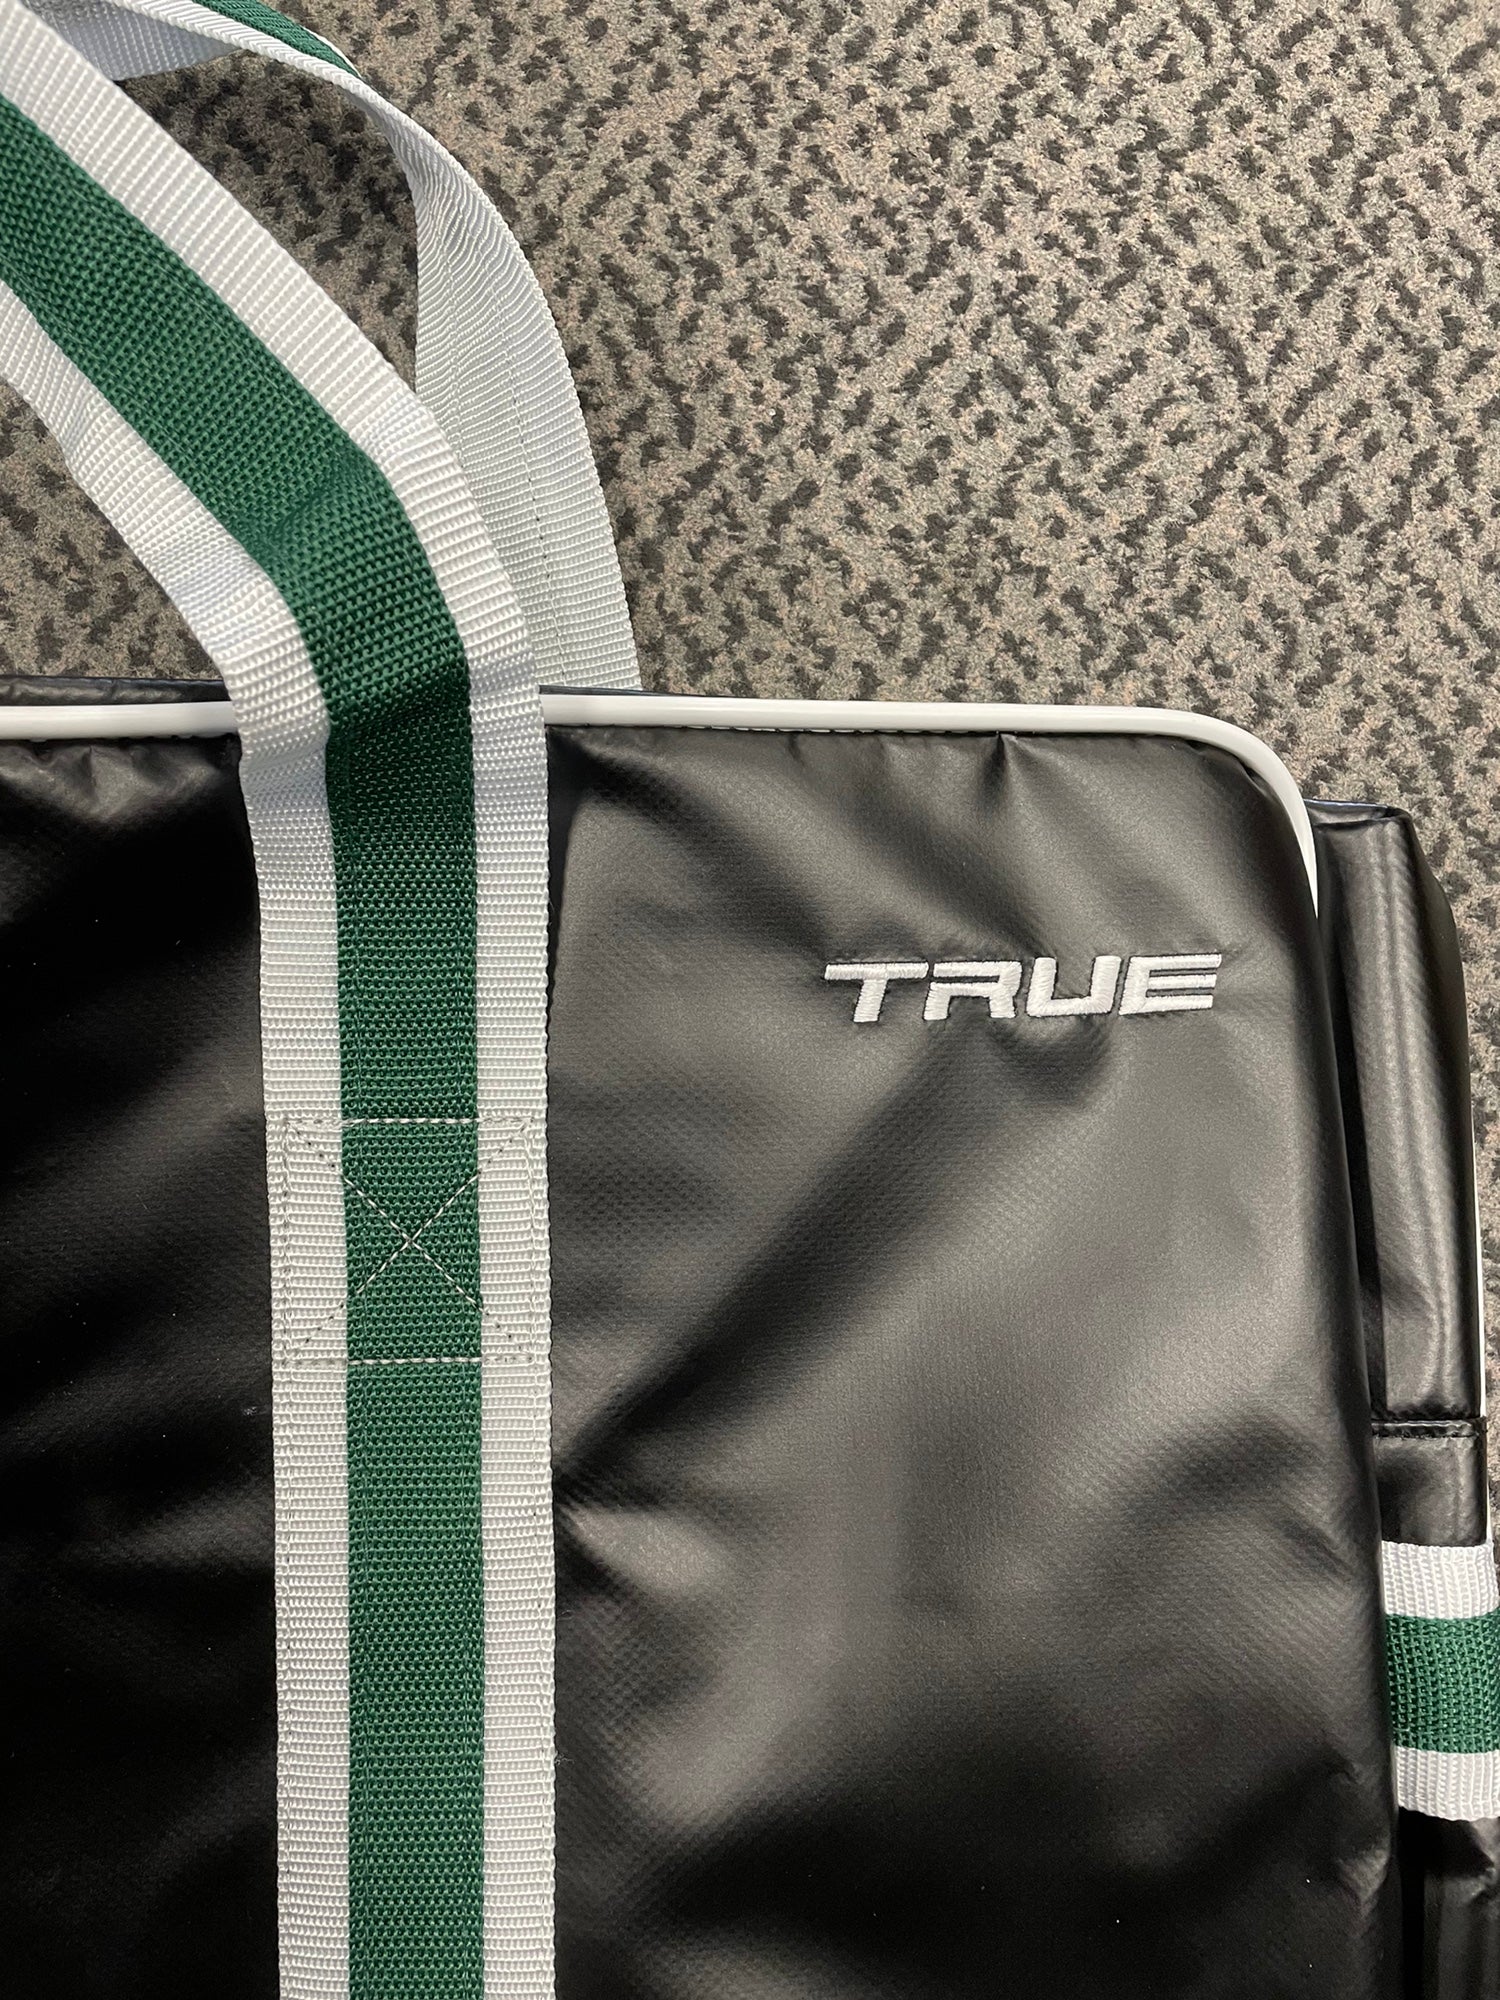 TRUE Elite Backpack Wheel Bag